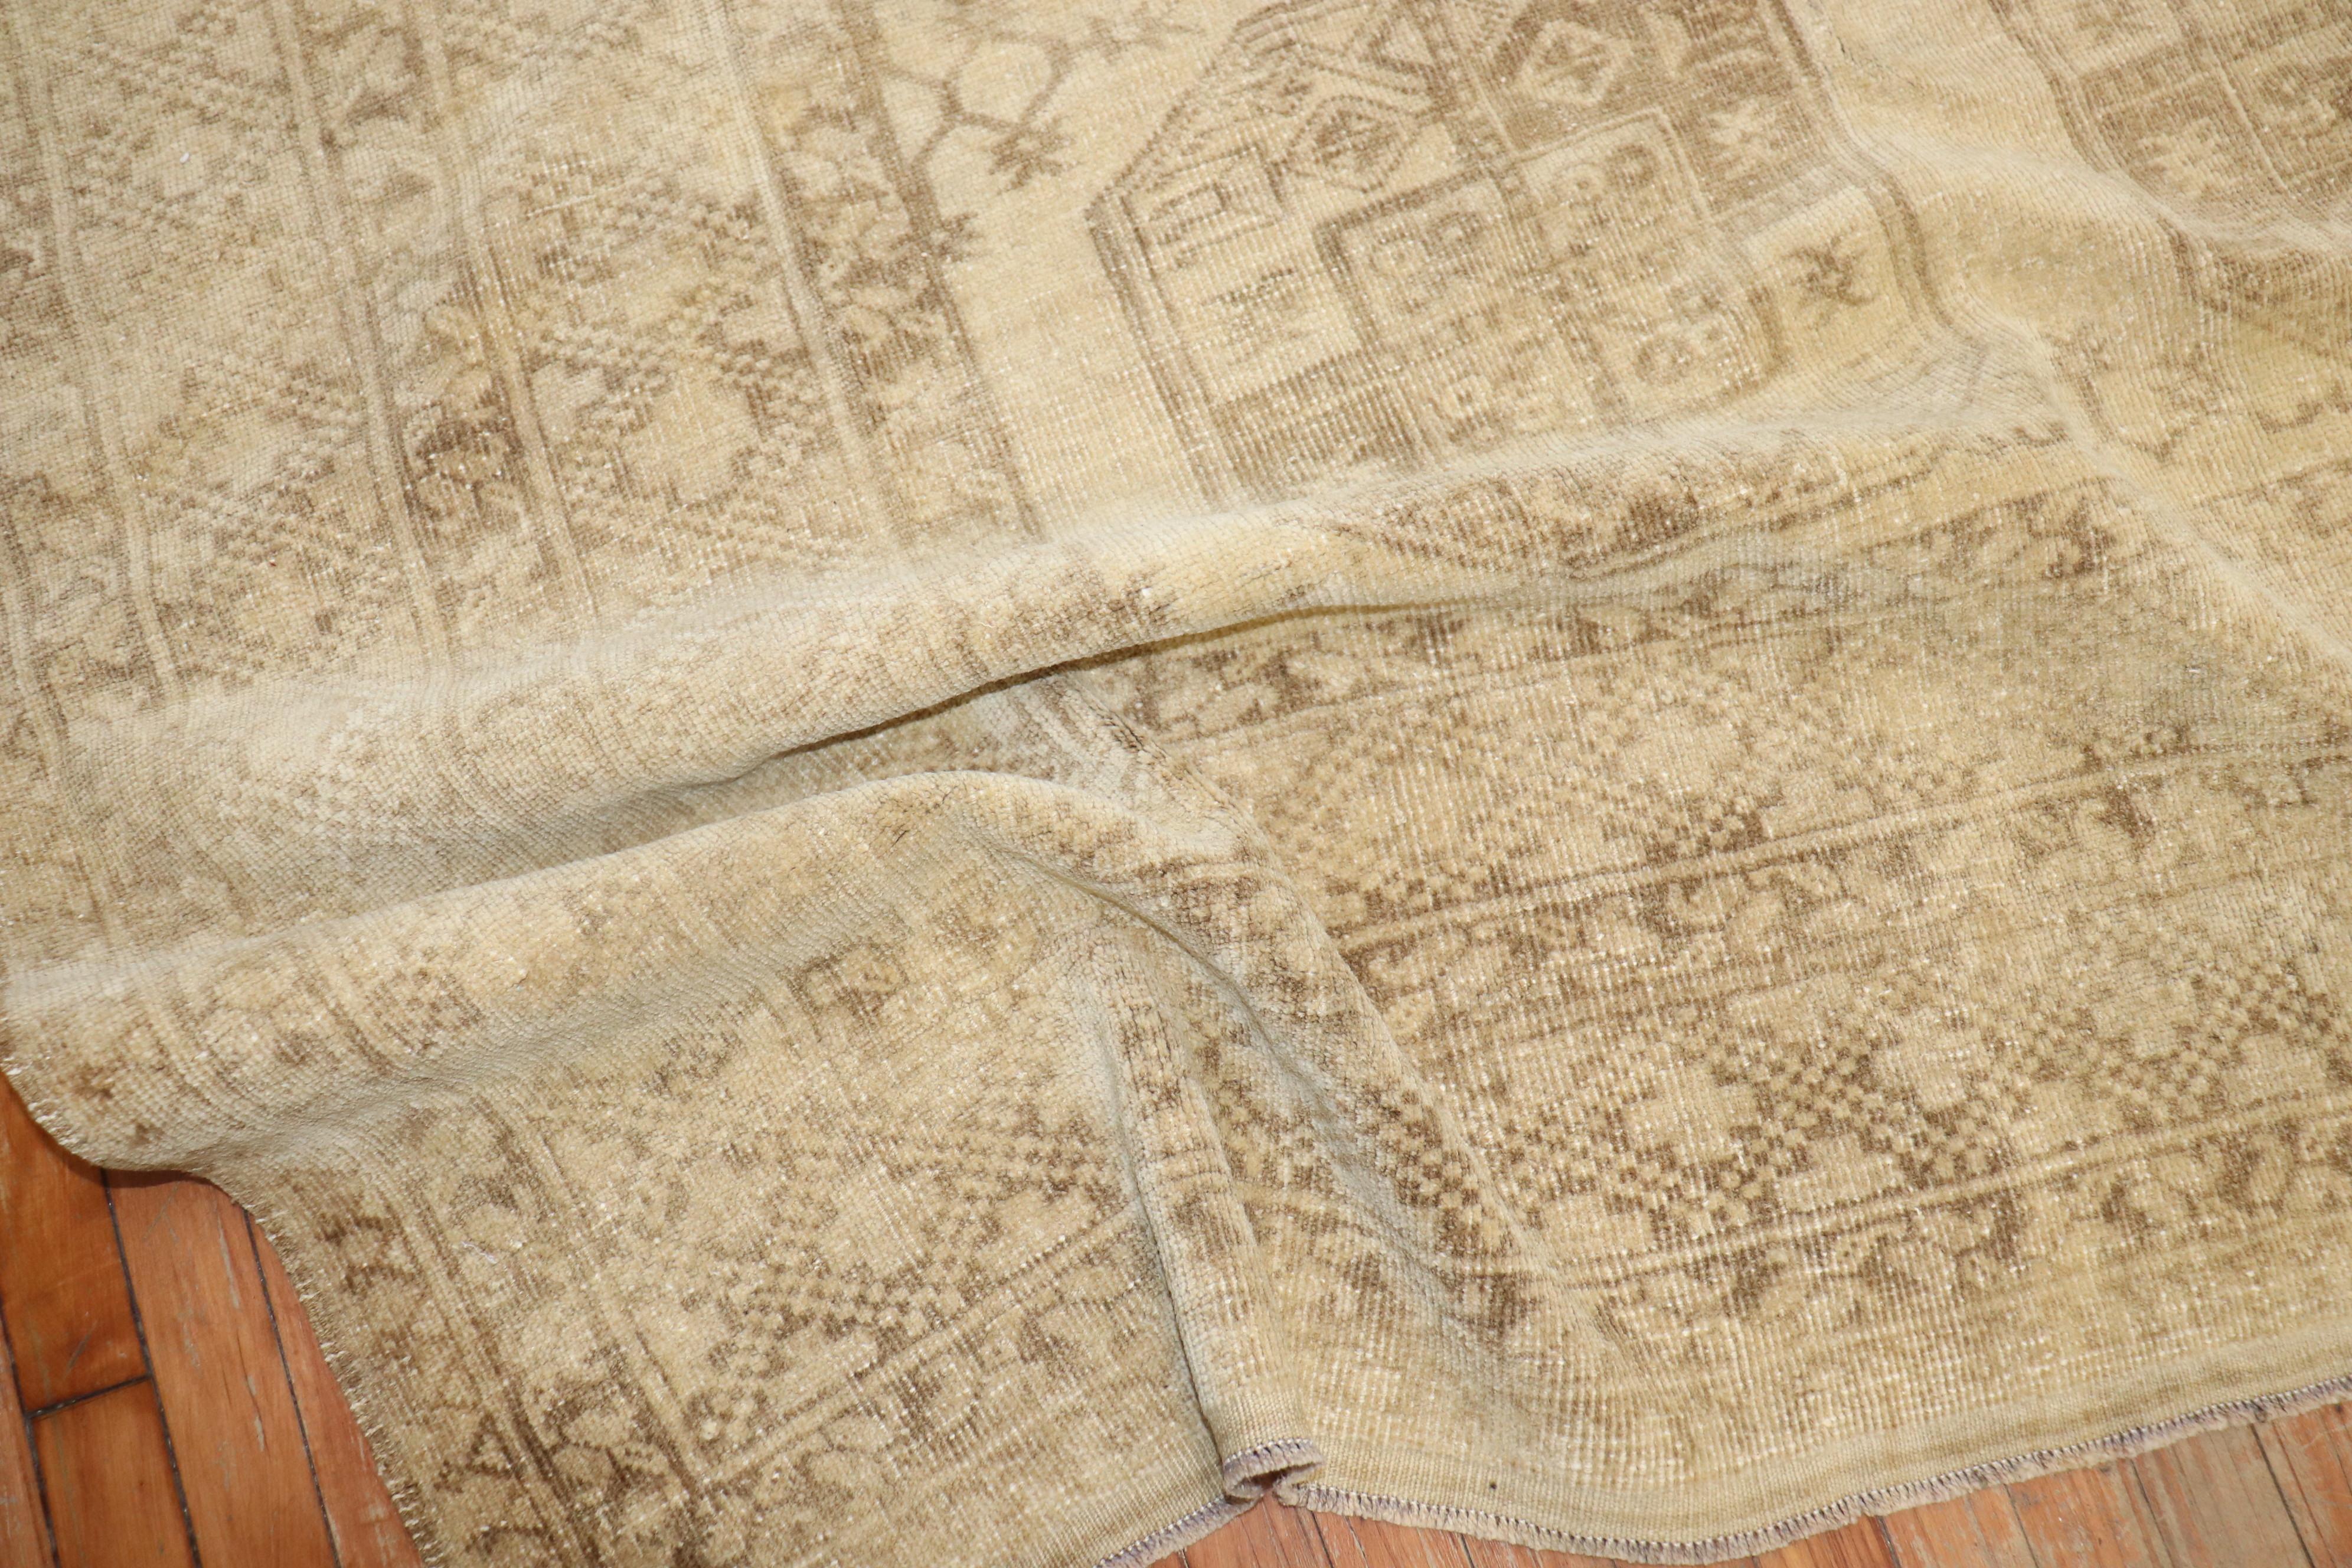 Tribal 1940s room size Afghan Ersari rug in beige and brown

Measures: 8'9'' x 11'2''.